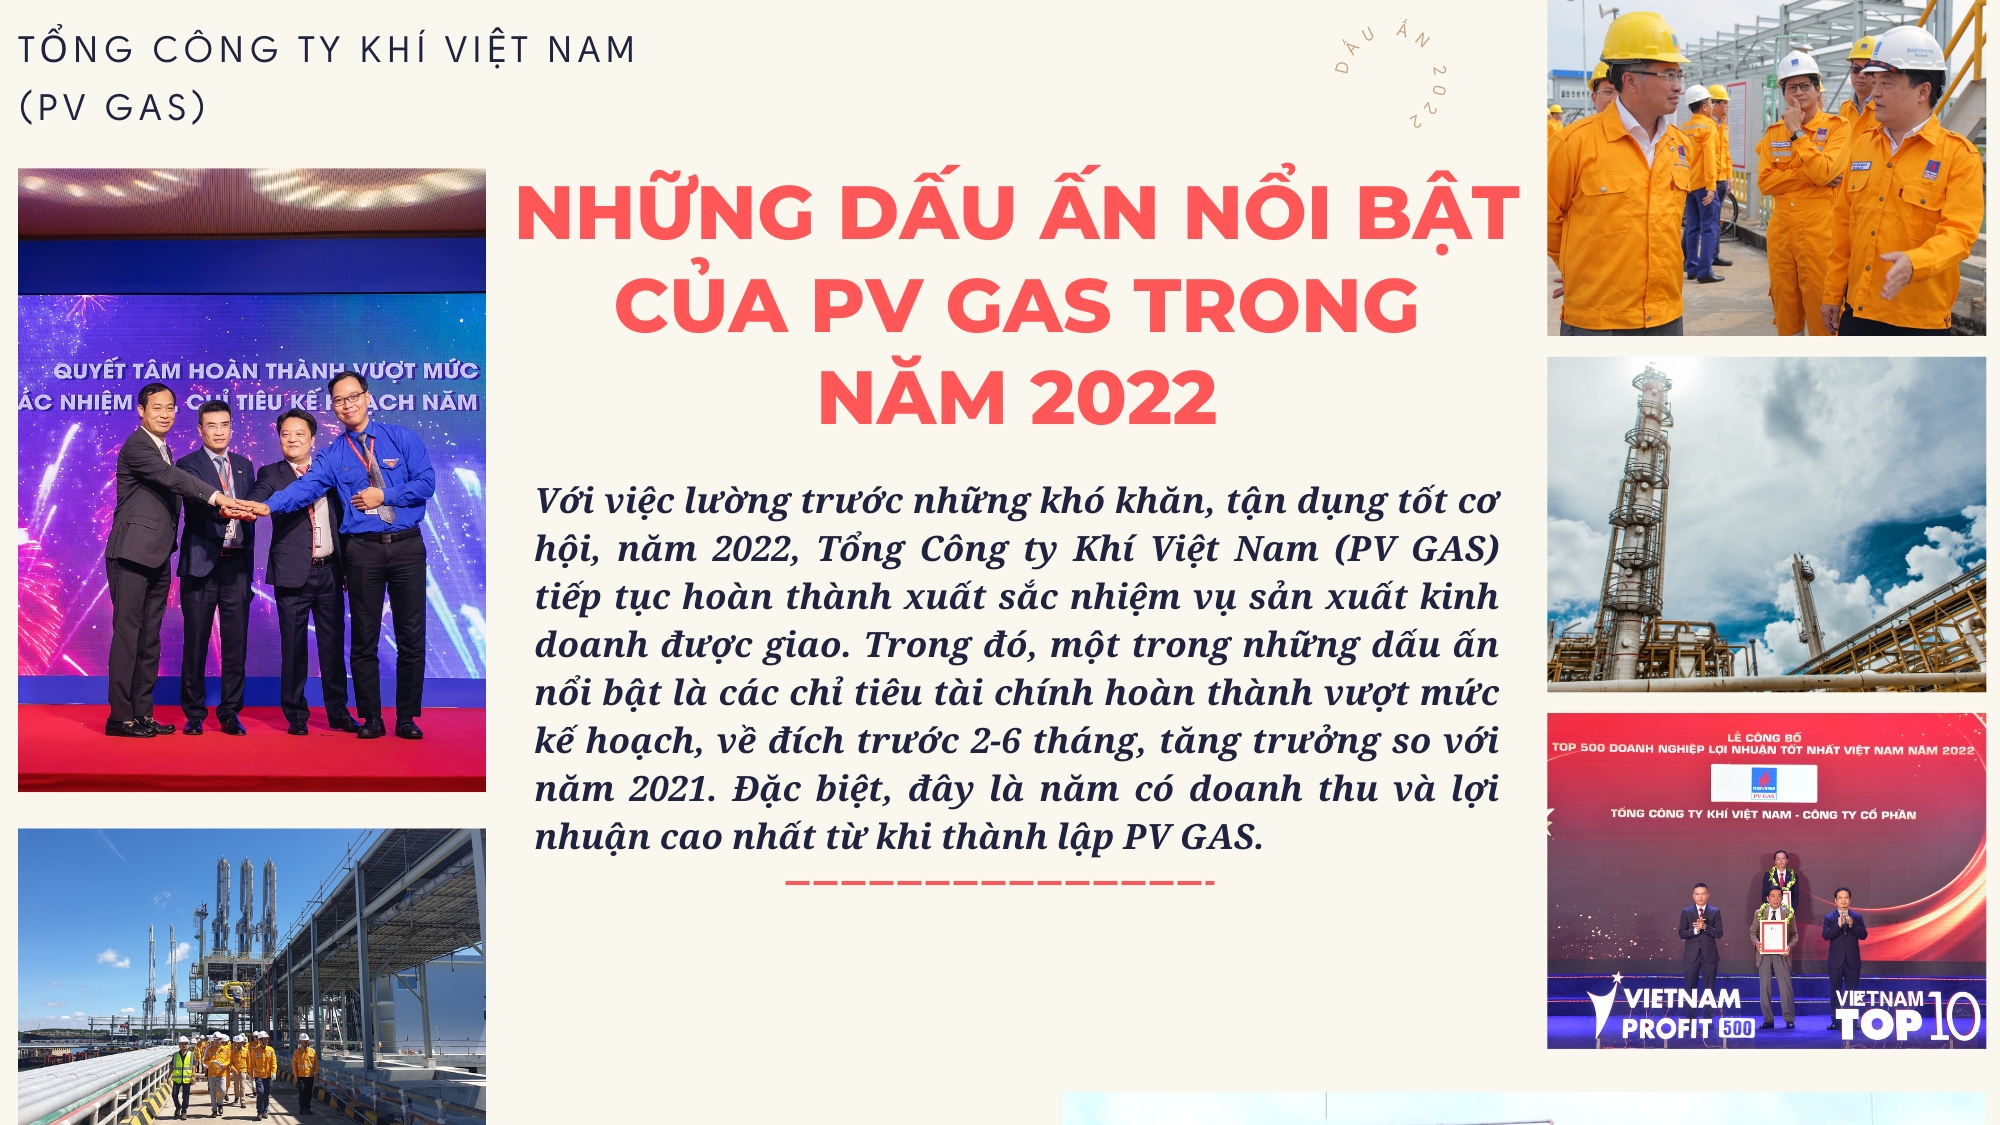 [E-Magazine] Những dấu ấn nổi bật của PV GAS trong năm 2022